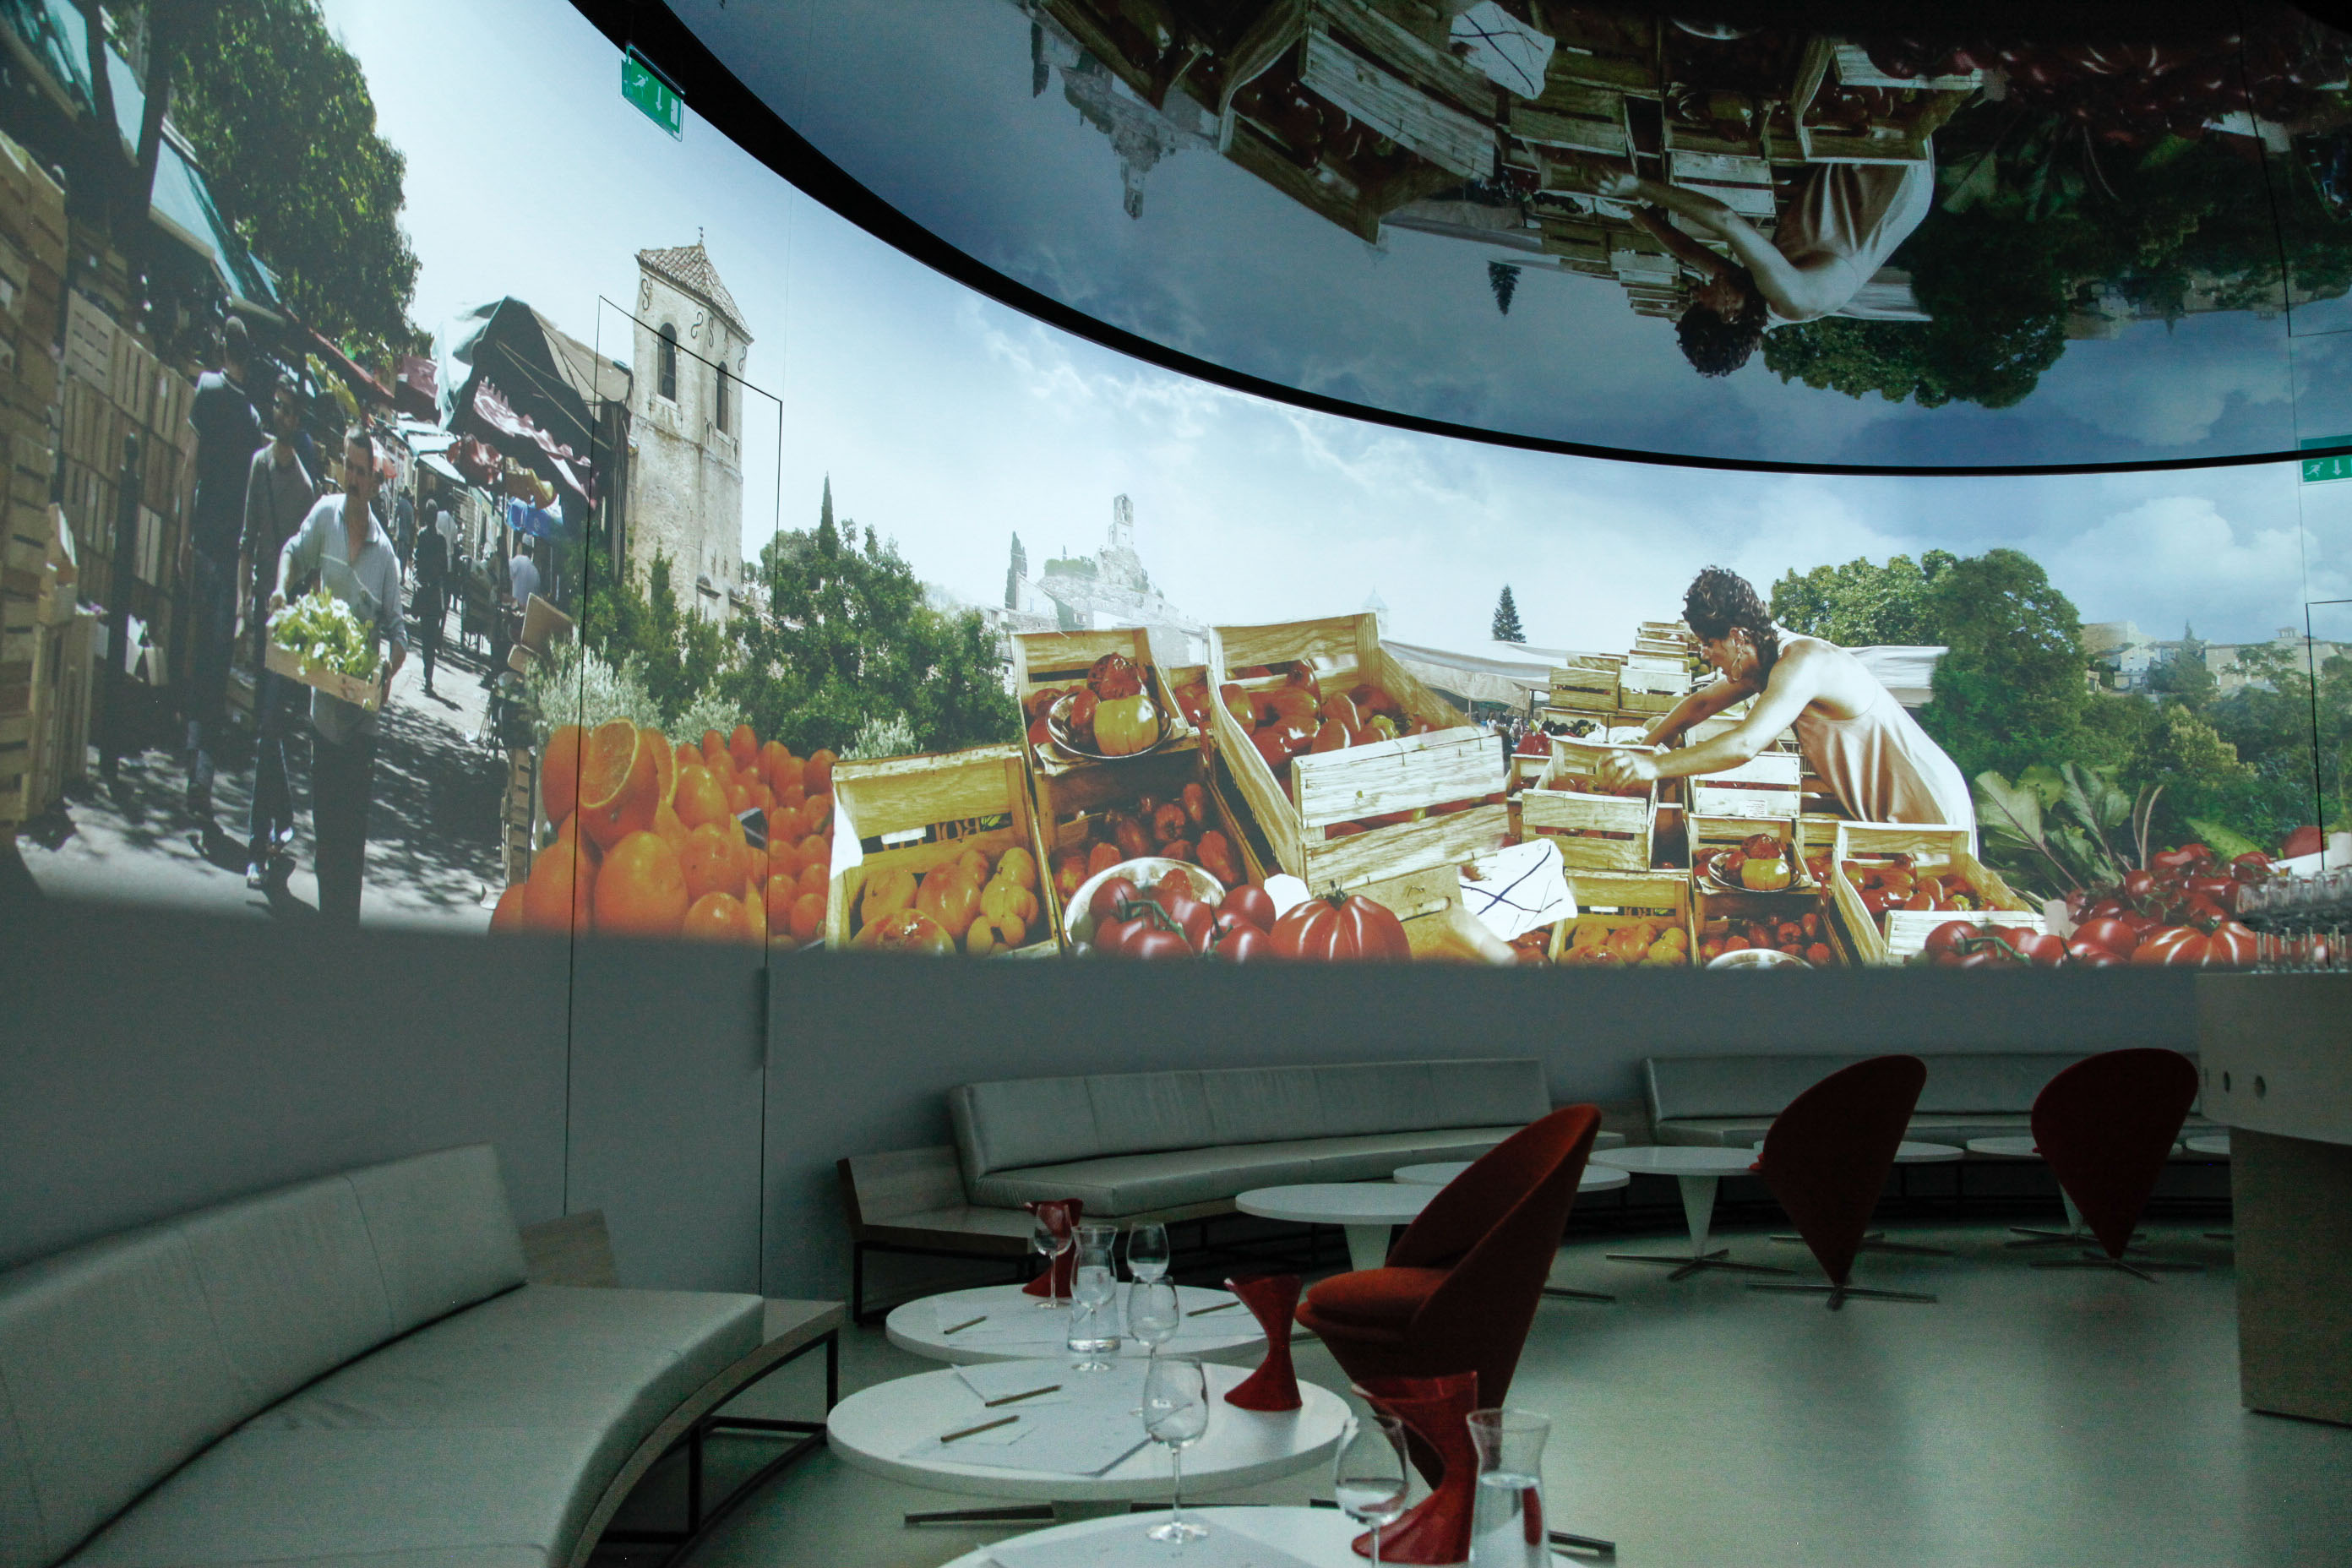 Zum Weinbaumuseum gehört ein multimedialer Sensorik-Raum. Ein Duft wird eingeleitet, er muss erraten werden.